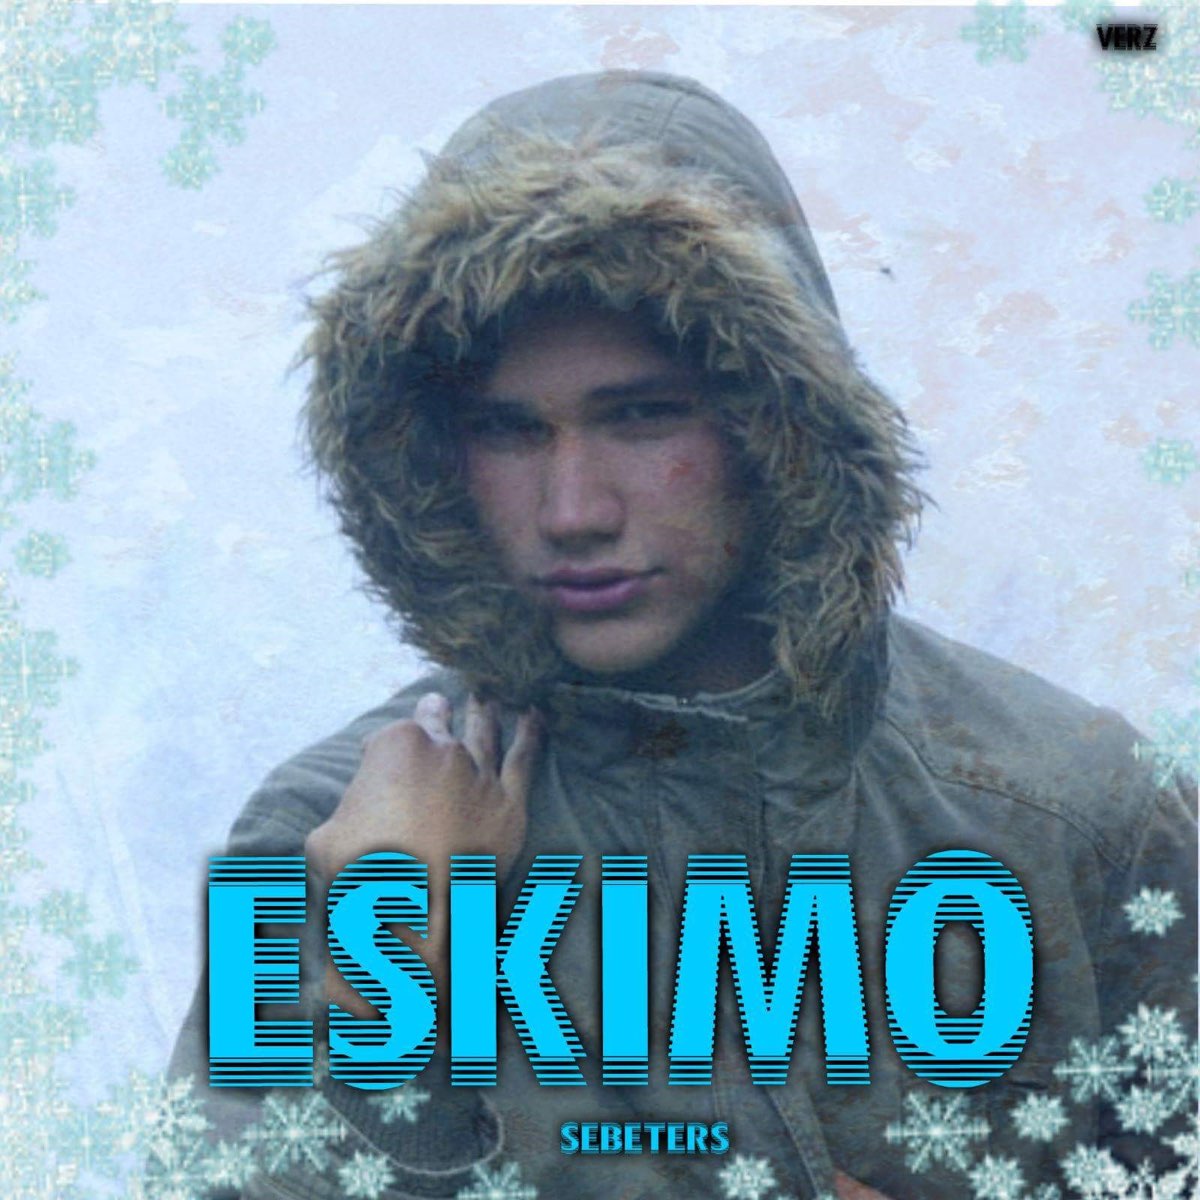 Песня эскимоса. Эскимос на обложке песни. Песня Эскимос zoloto. Sebeter.